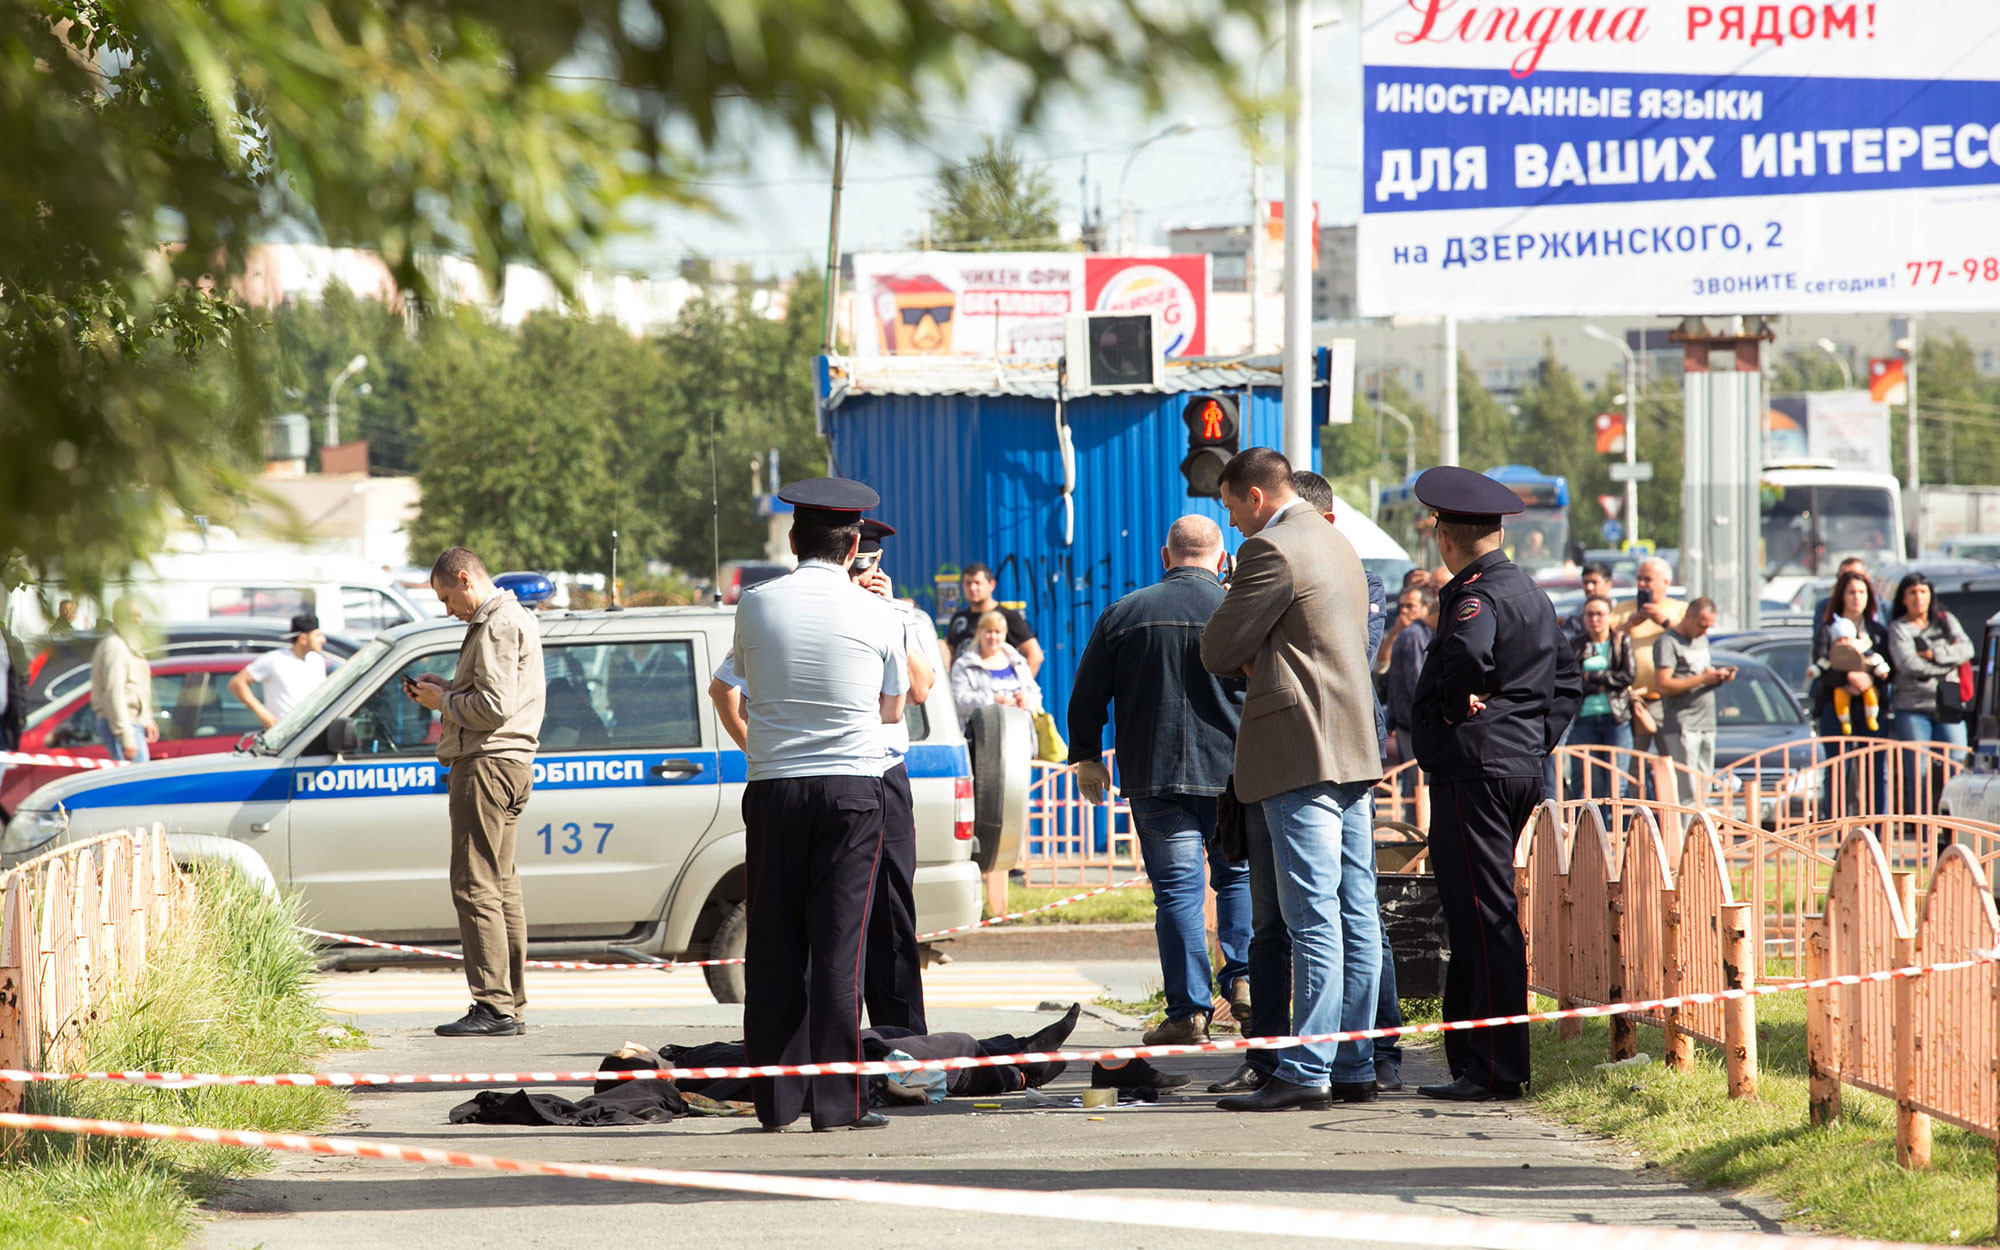 Сотрудники правоохранительных органов работают в центре города Сургута на месте, где неизвестный мужчина напал с ножом на людей и ранил несколько человек. Фото: © РИА Новости / Ирина Швец